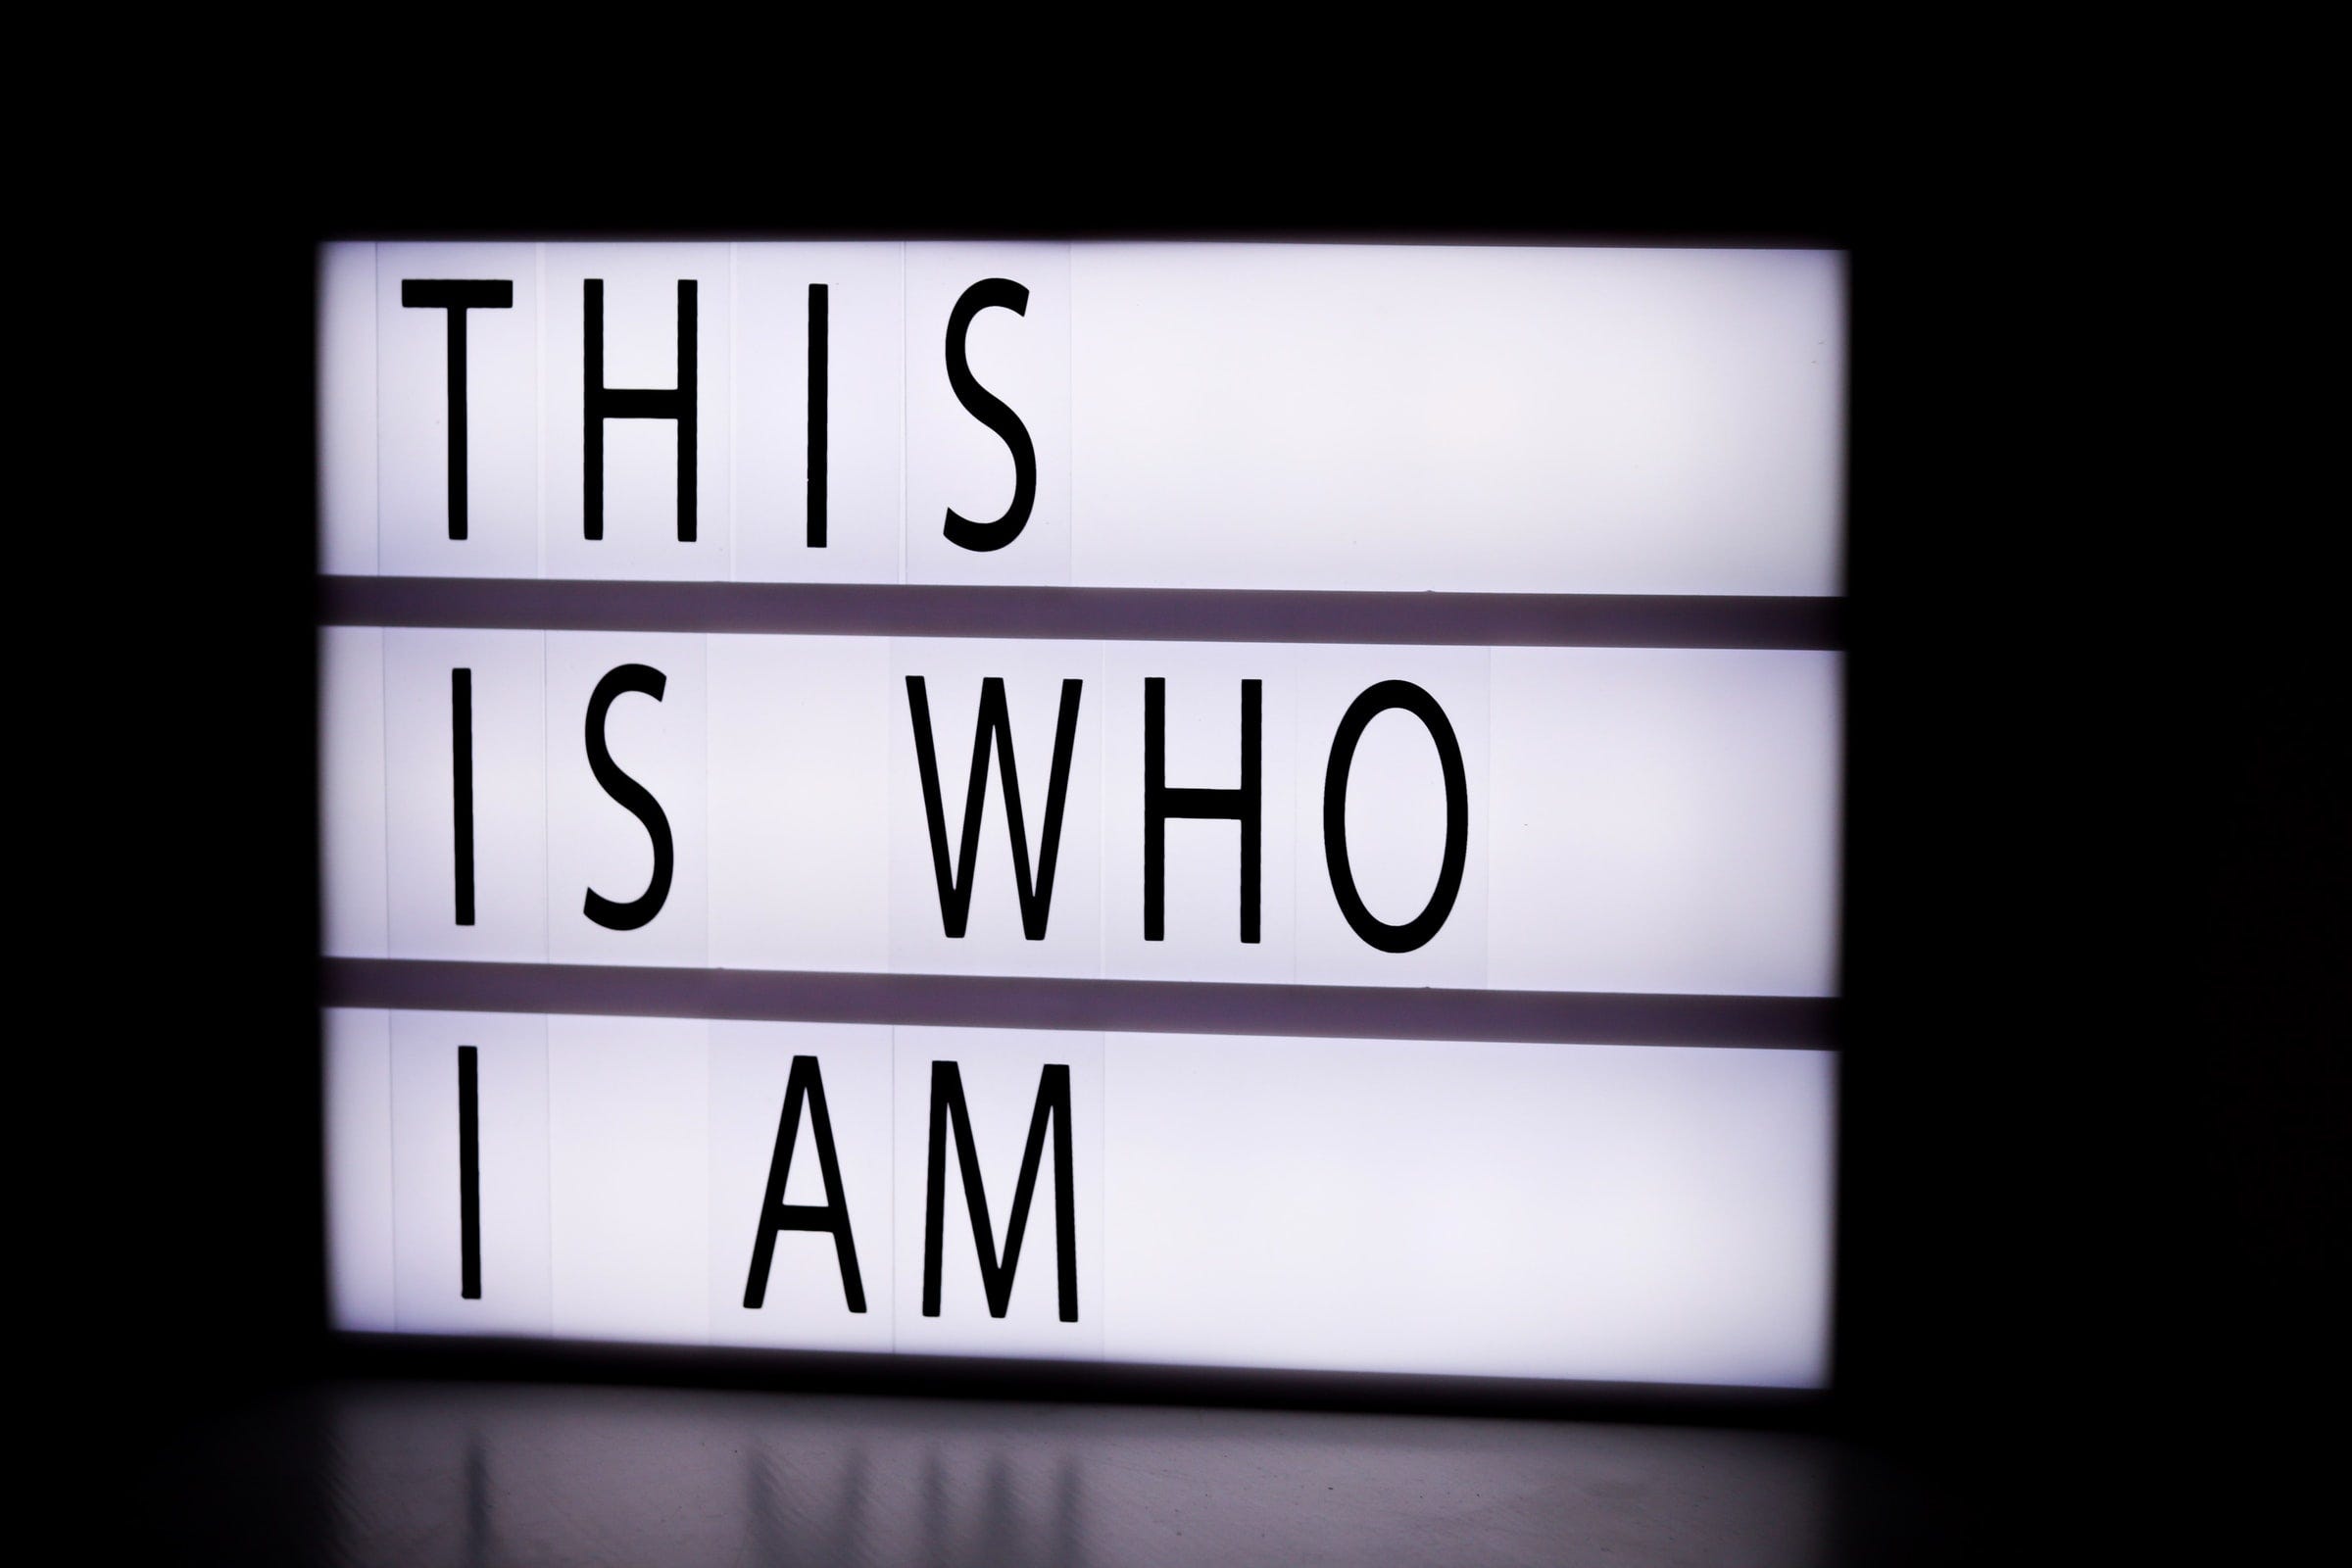 Leuchtschild mit "THIS IS WHO I AM"